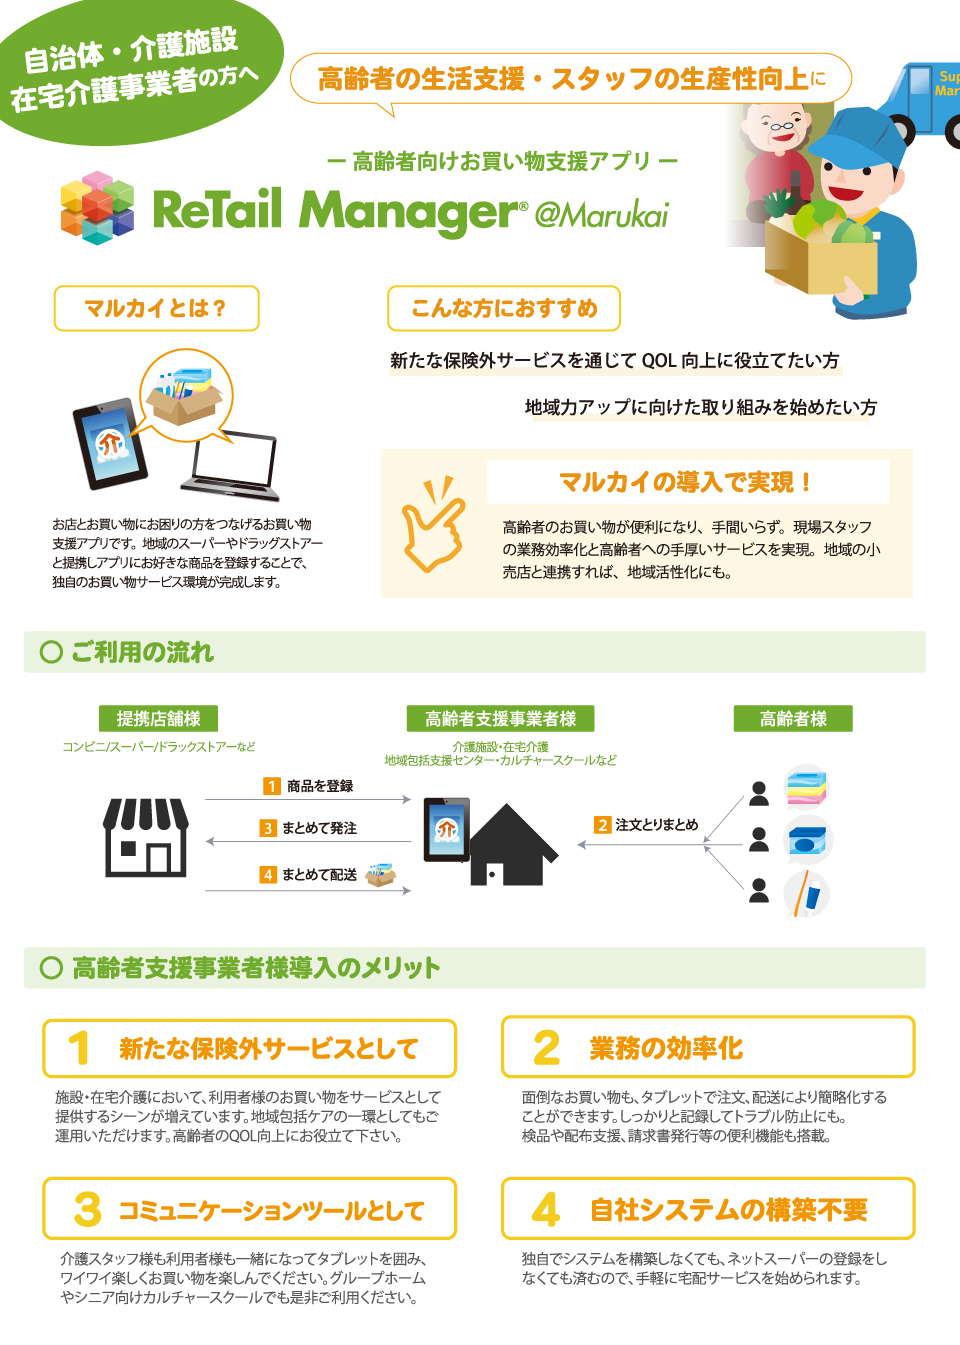 高齢者向けお買い物支援アプリ『Retail Manager@Marukai』